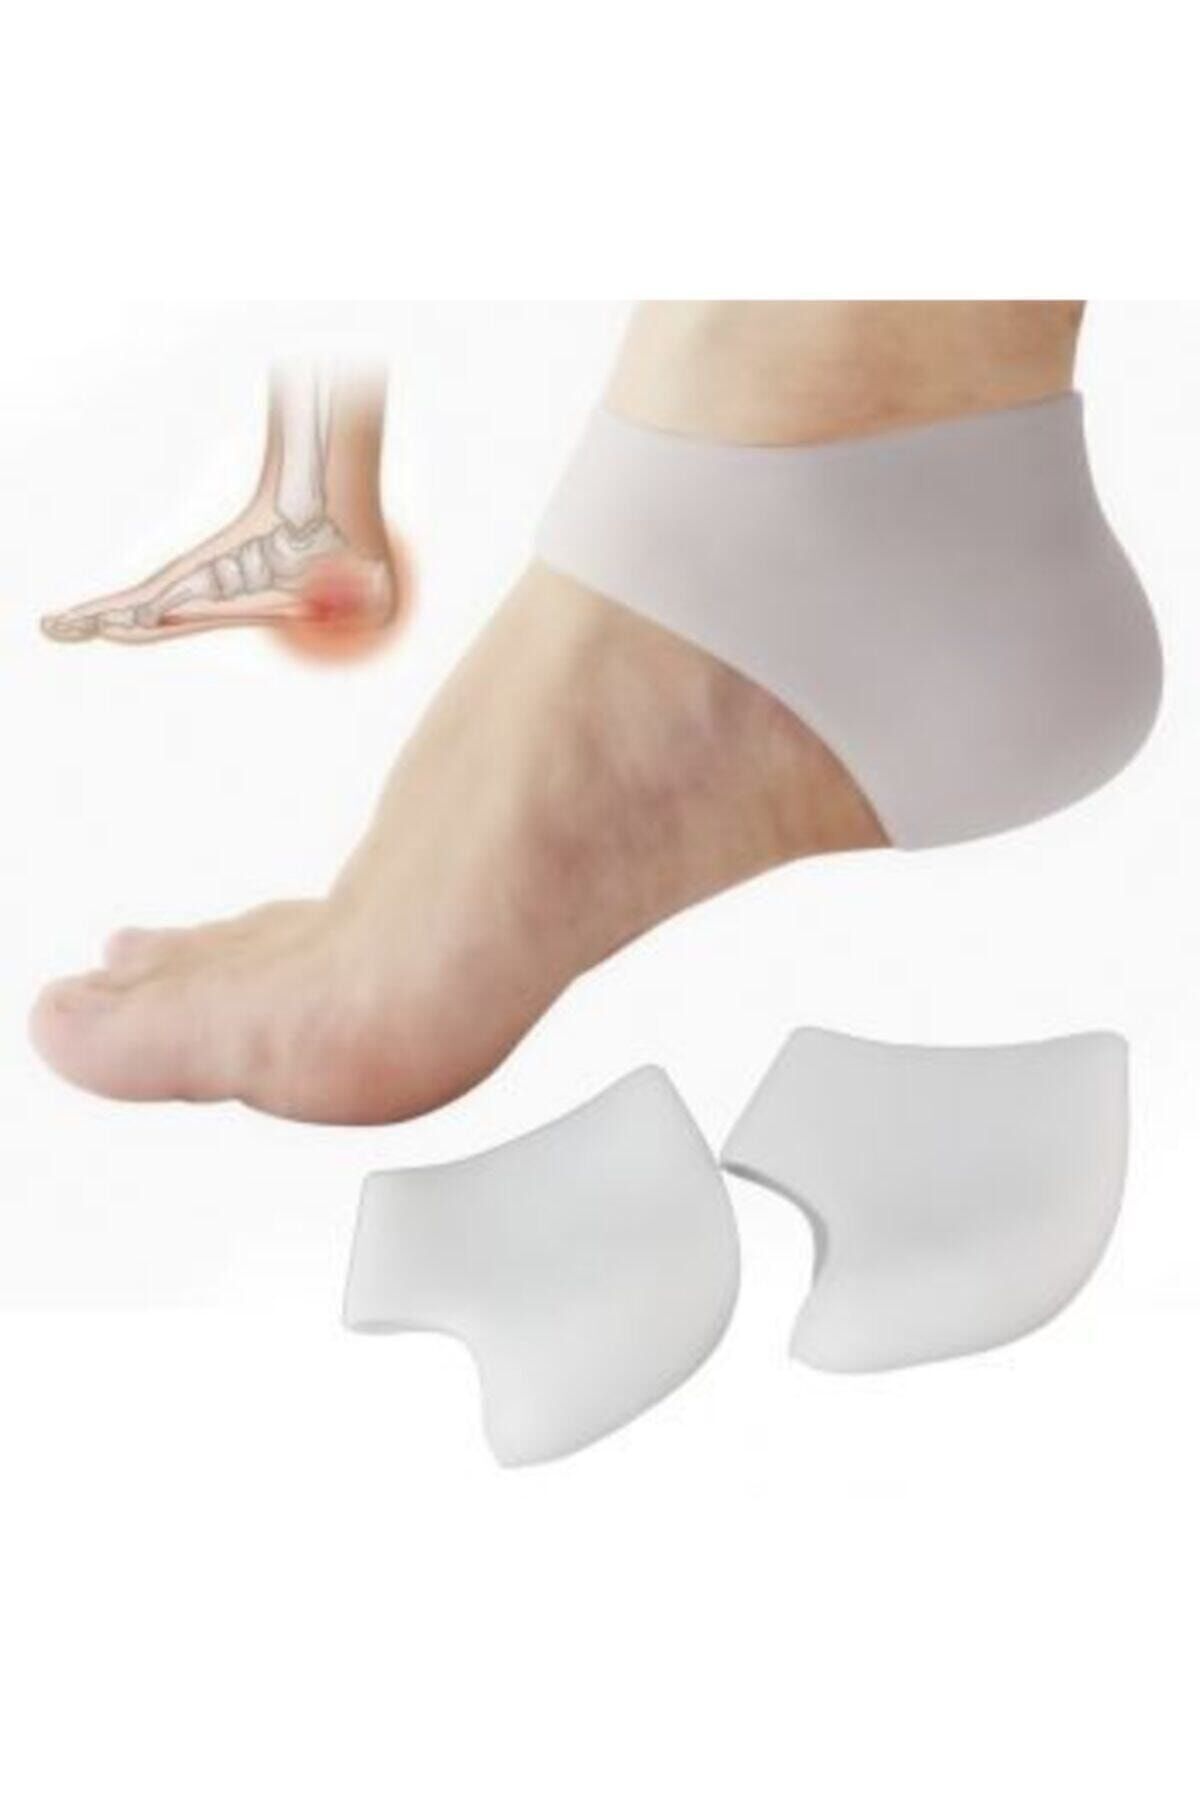 ORZEN Silikon Topuk Gömleği Dikeni Bunyon Çatlak Koruyucu Bandaj Ortopedik Ayak Destek Çorabı